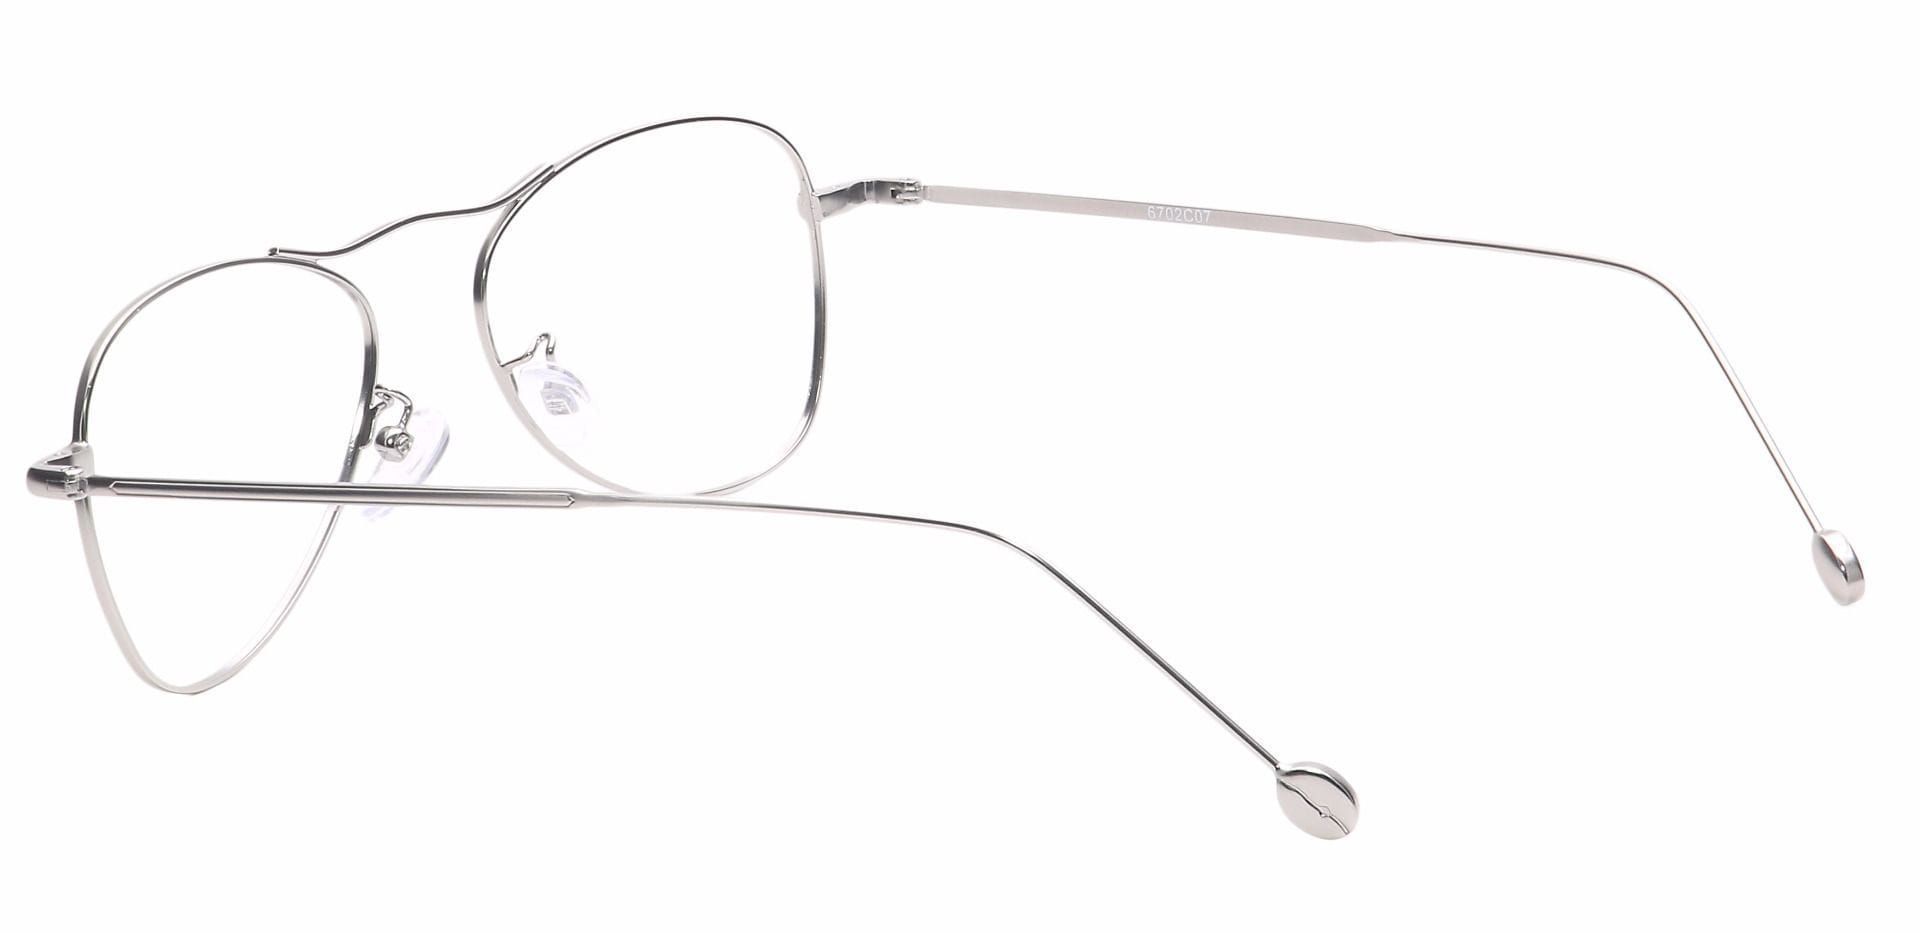 Brio Aviator Non-Rx Glasses - Silver